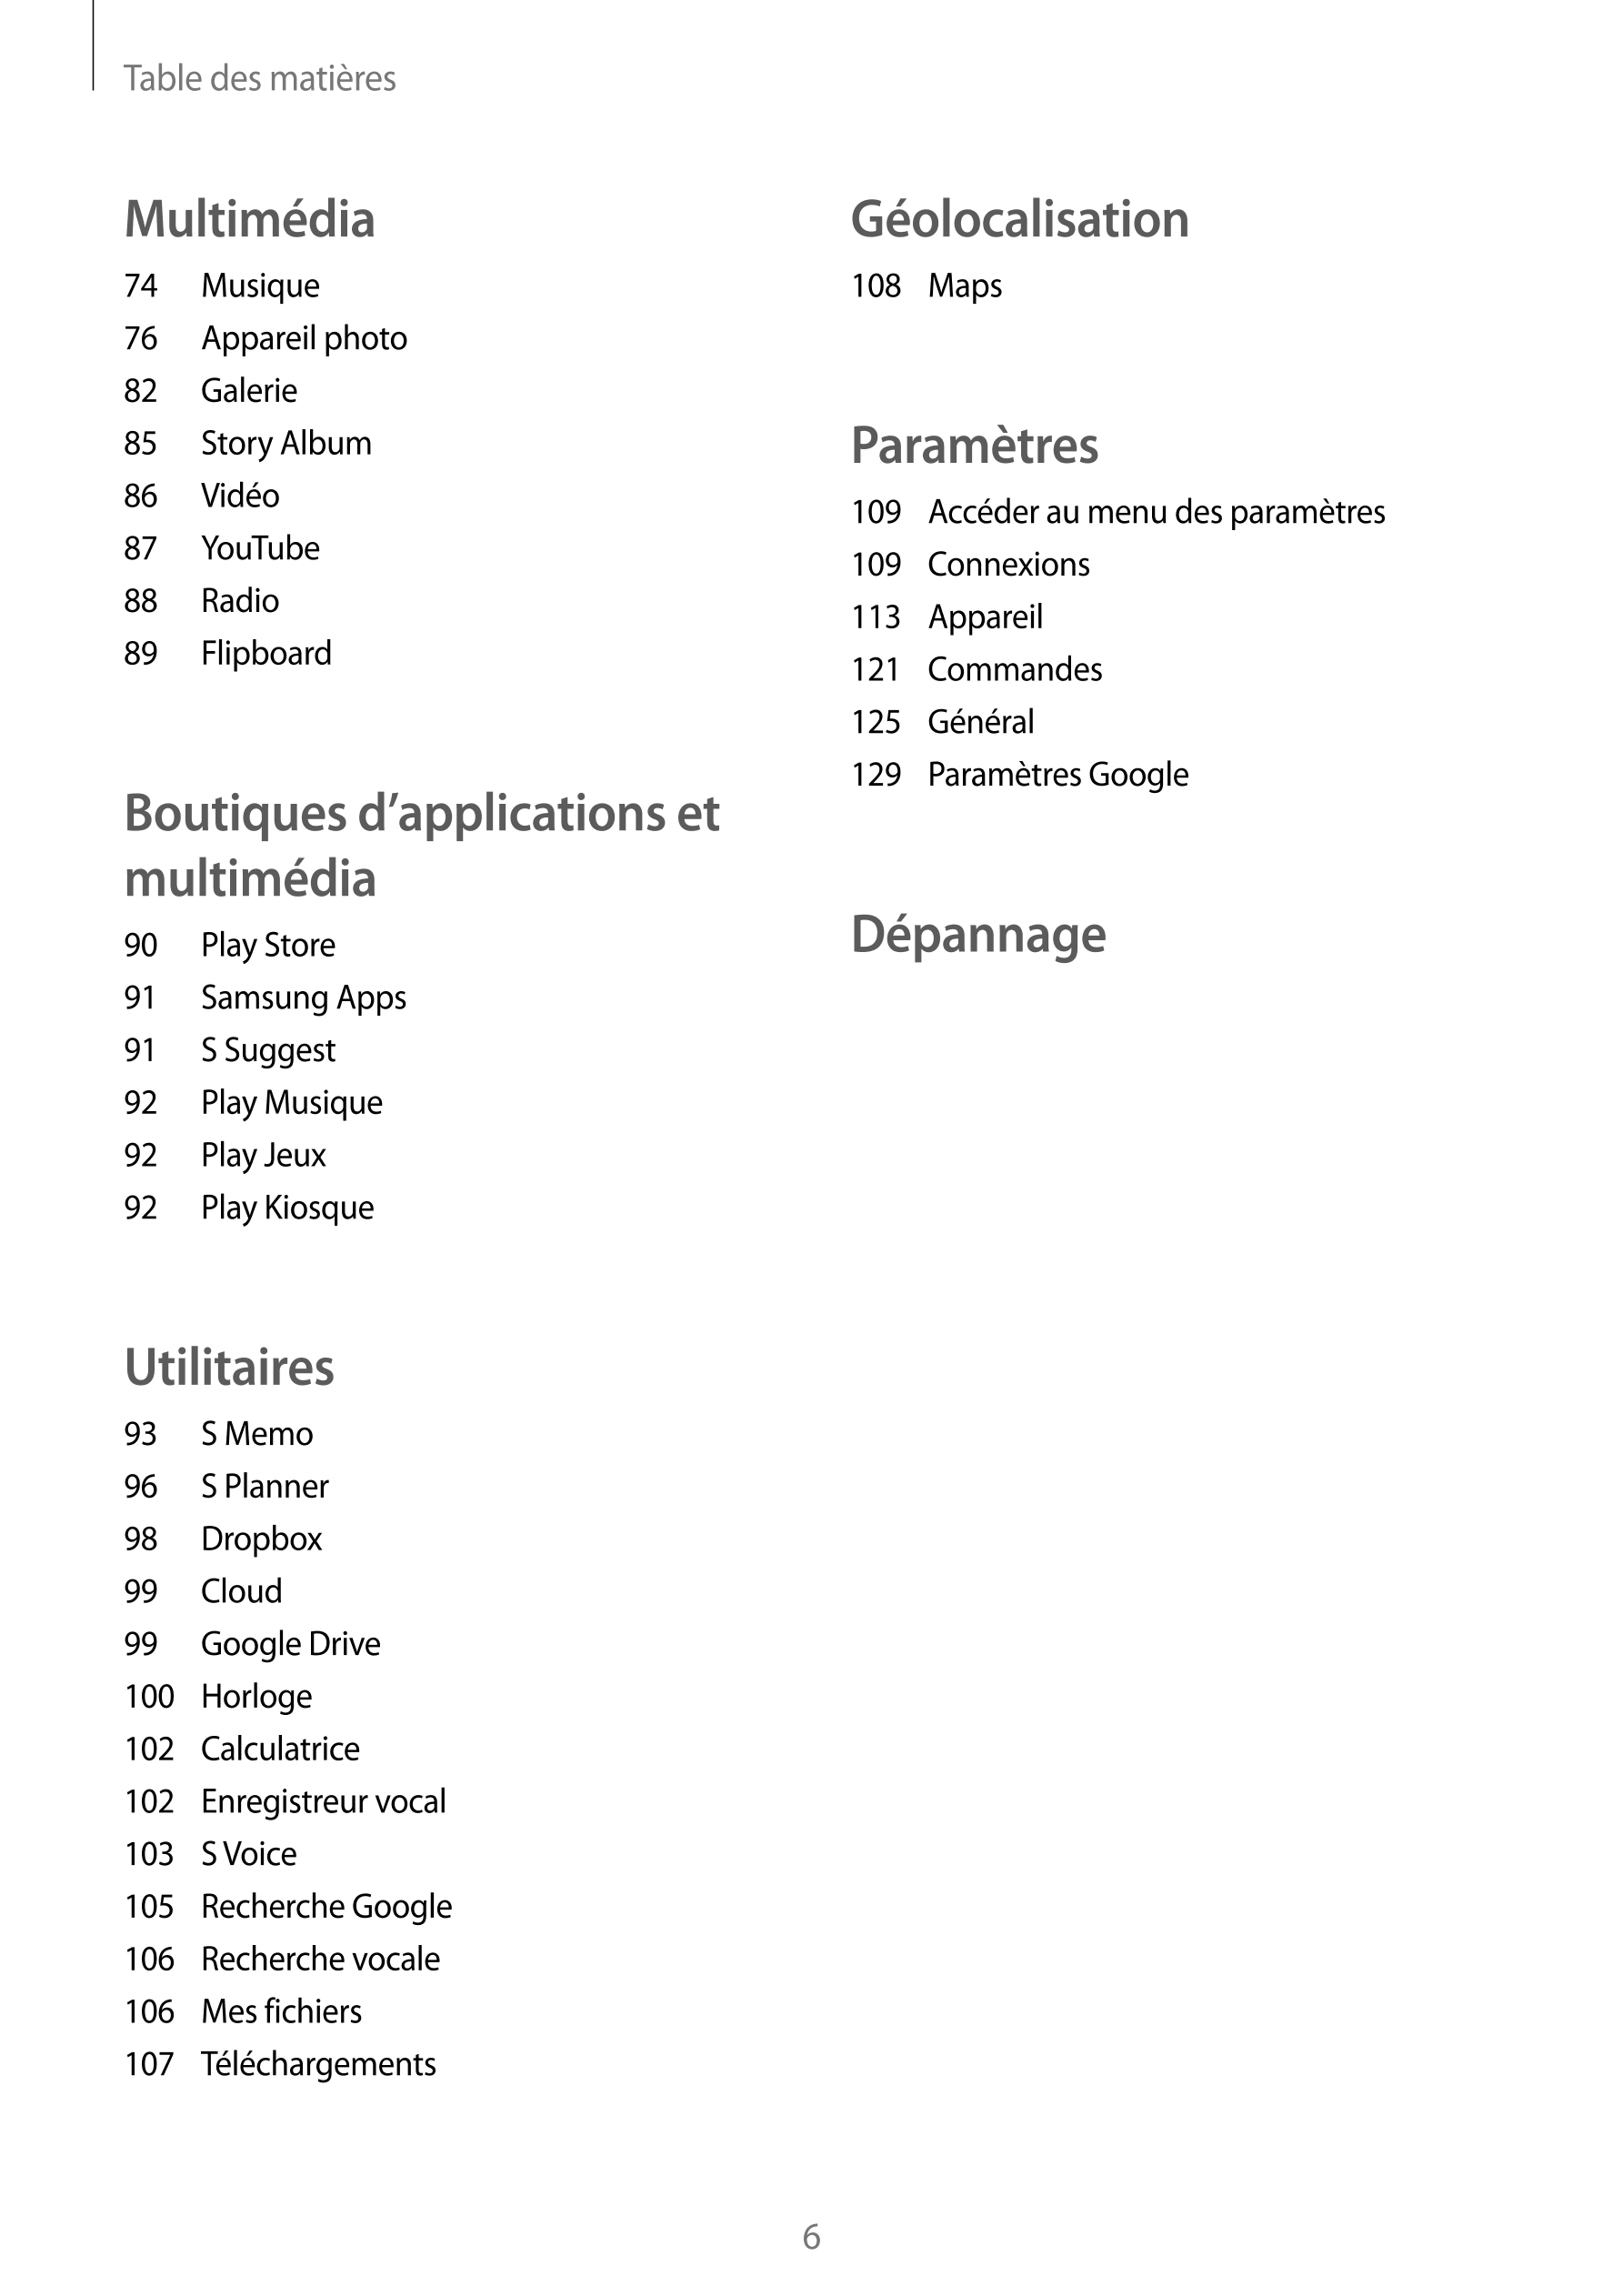 Table des matières
Multimédia Géolocalisation
74  Musique 108  Maps
76  Appareil photo
82  Galerie
85  Story Album Paramètres
86